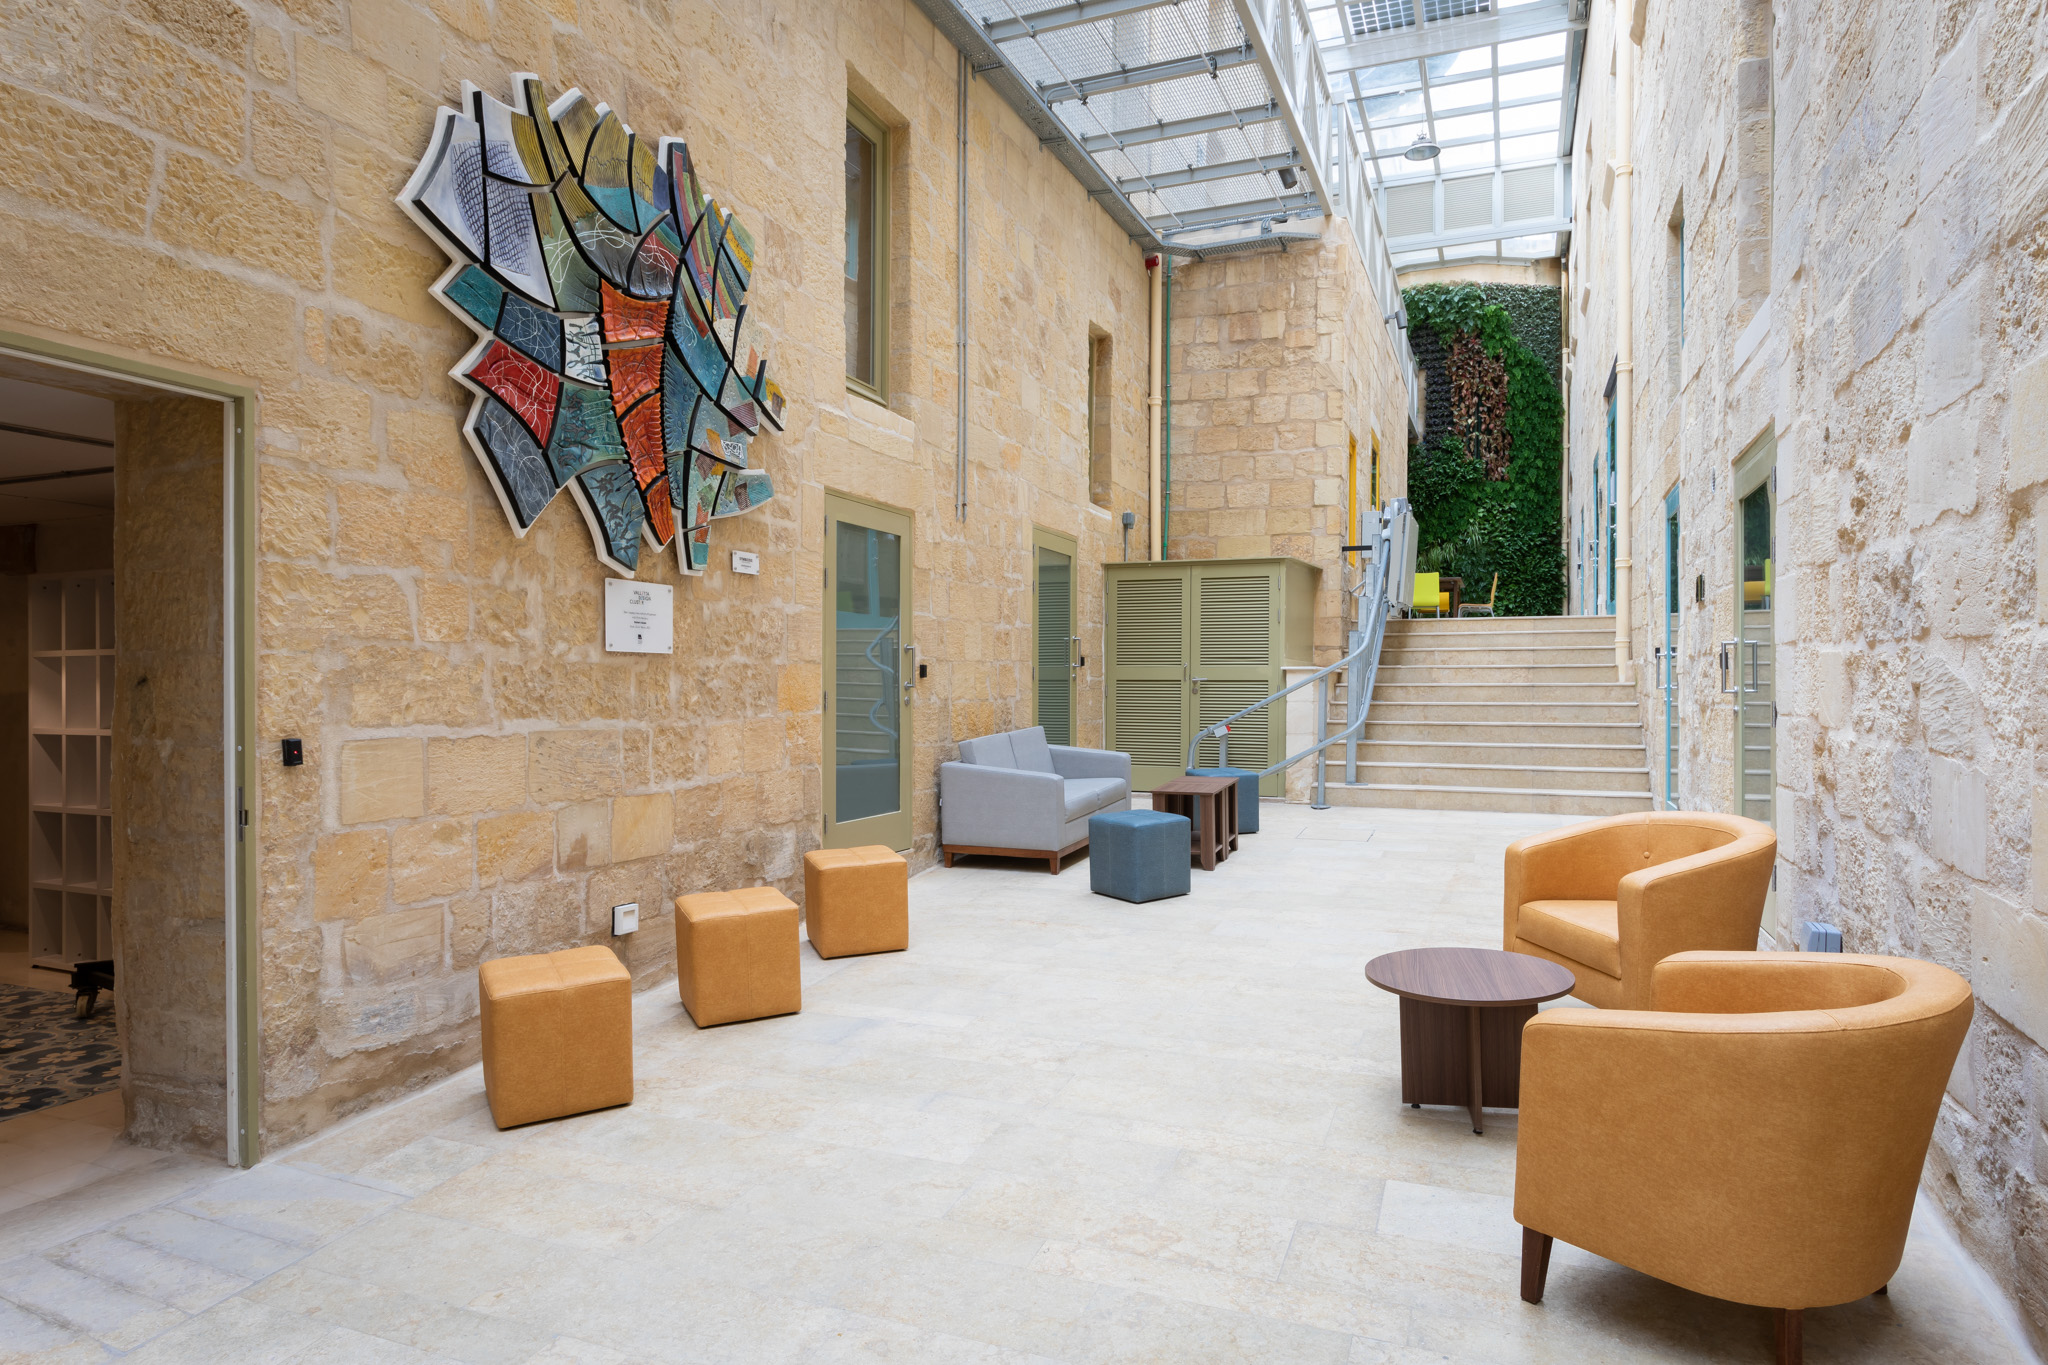 The Valletta Design Cluster Courtyard